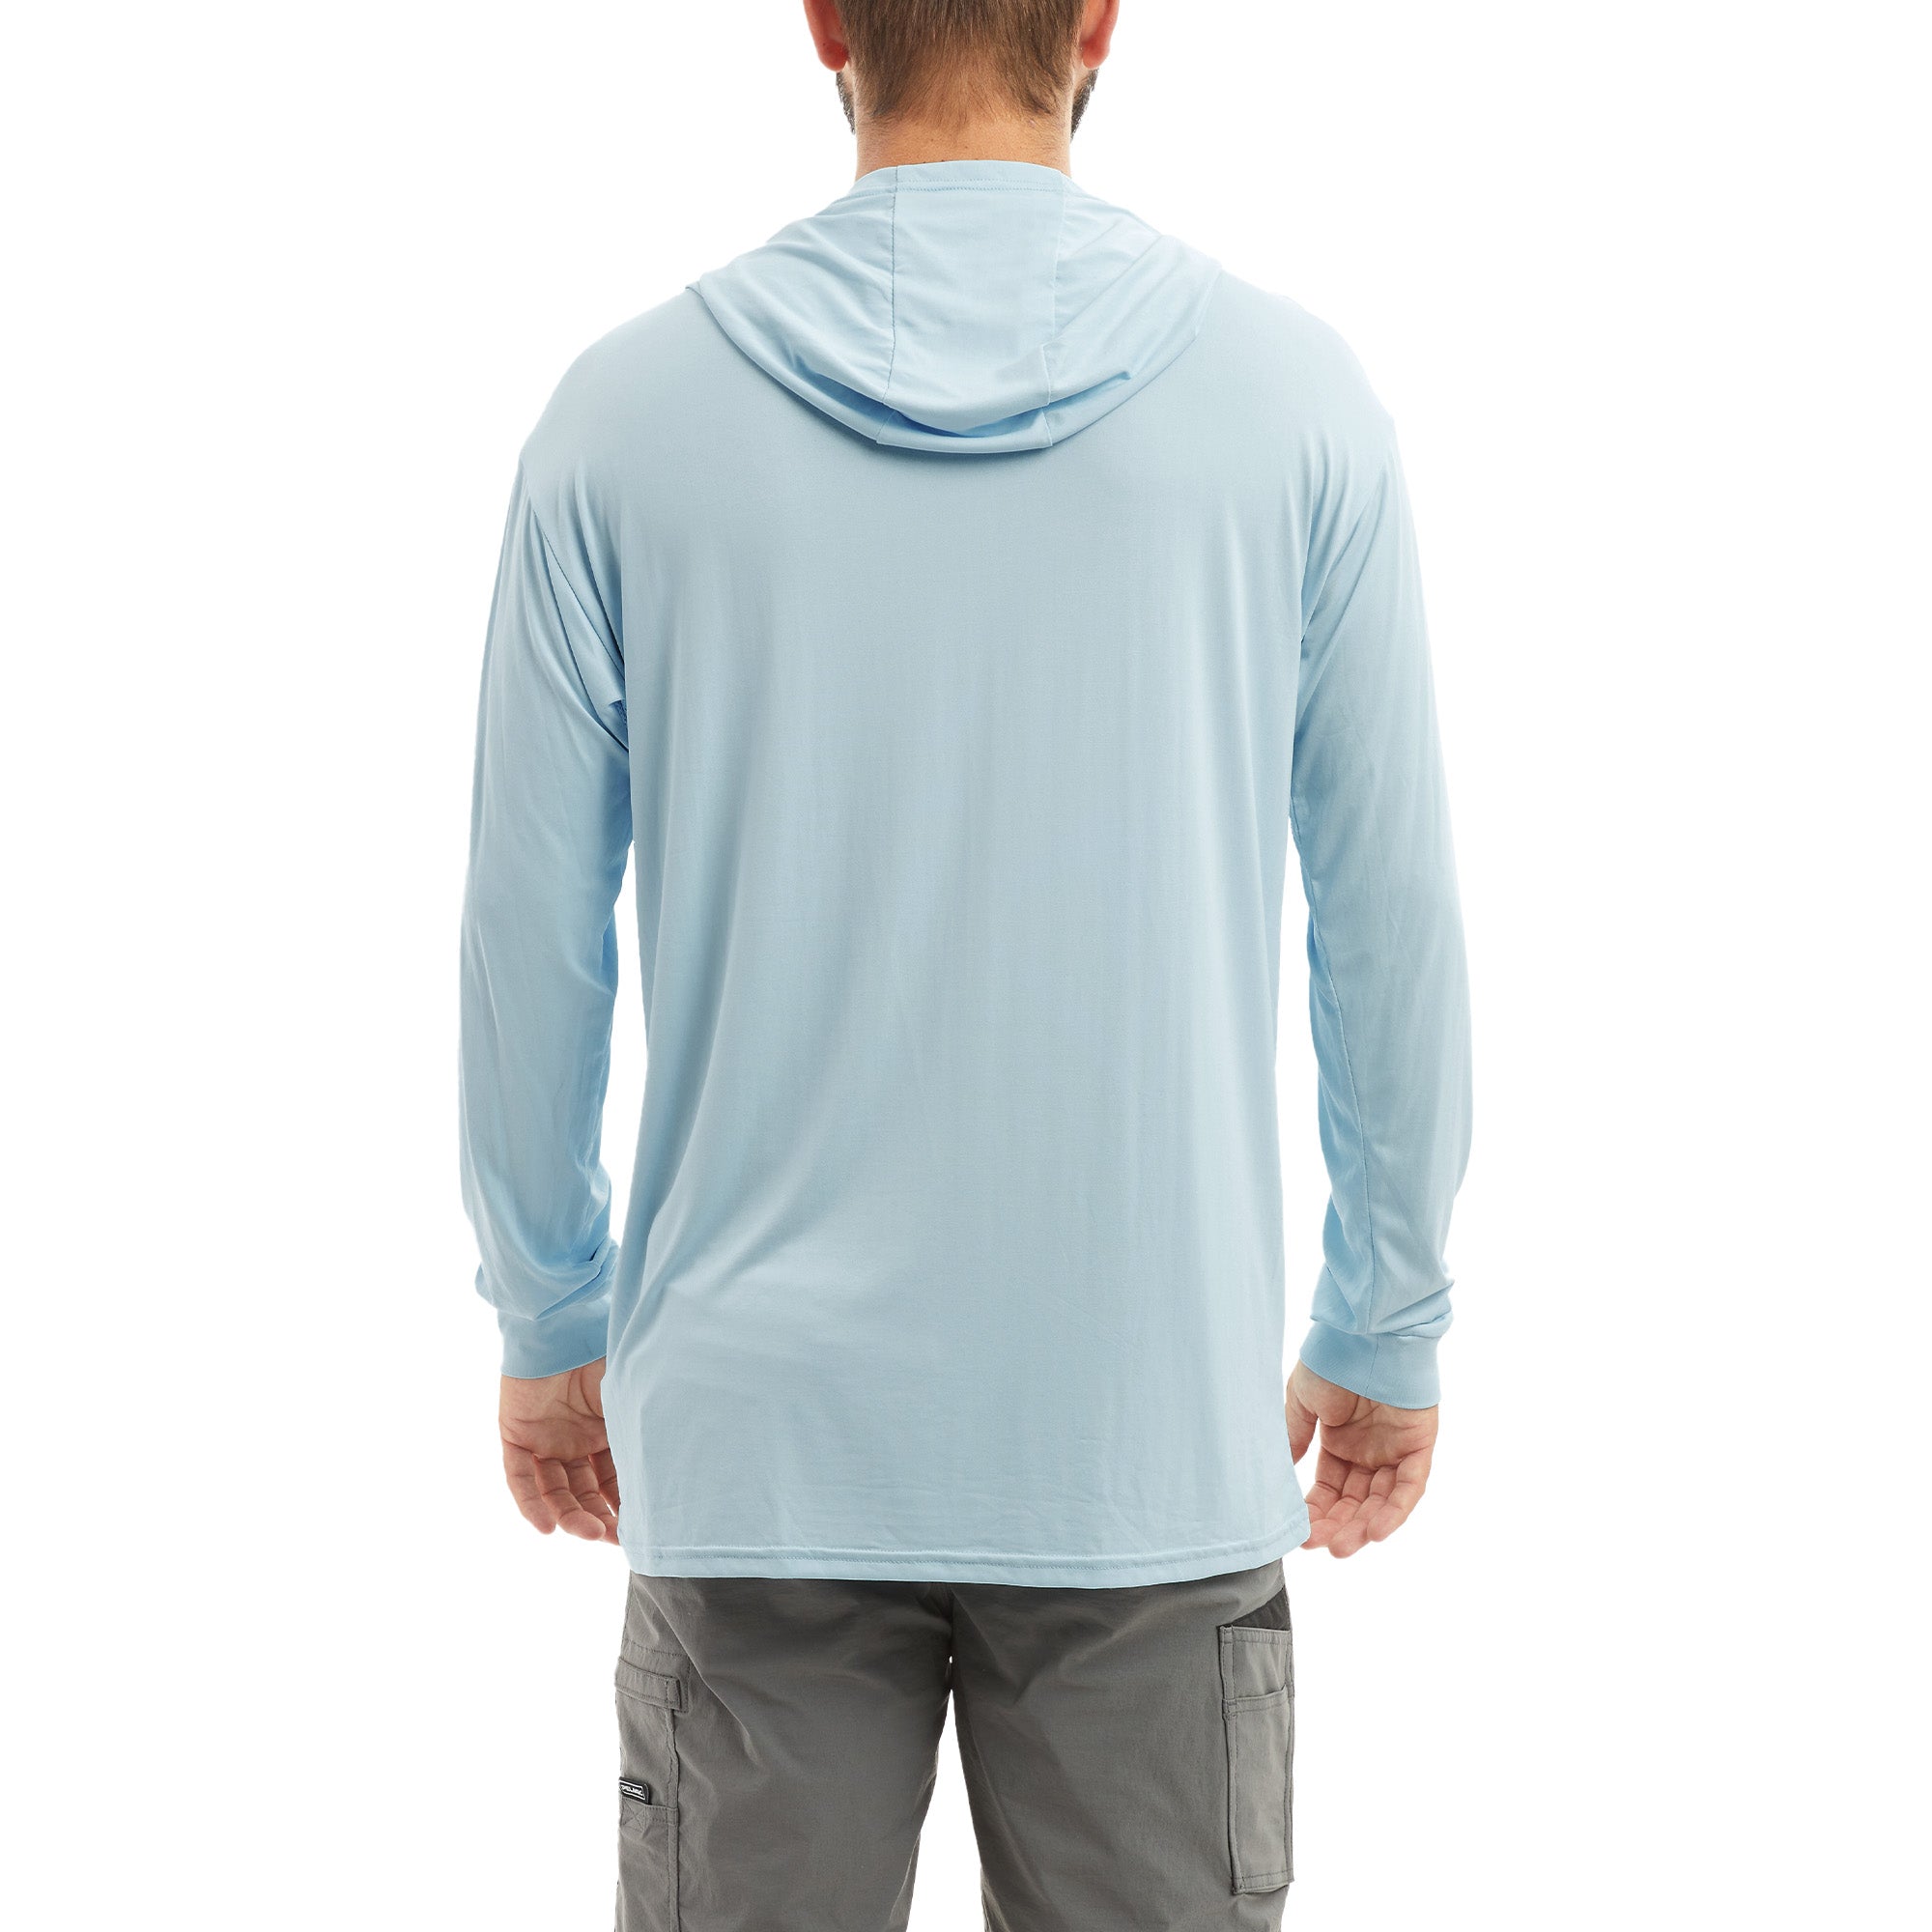 Реглан Pelagic Aquatek Hooded Fishing Shirt - Gyotaku. XL. Smokey blue  (арт.88773580204) - купить в Украине по лучшей цене